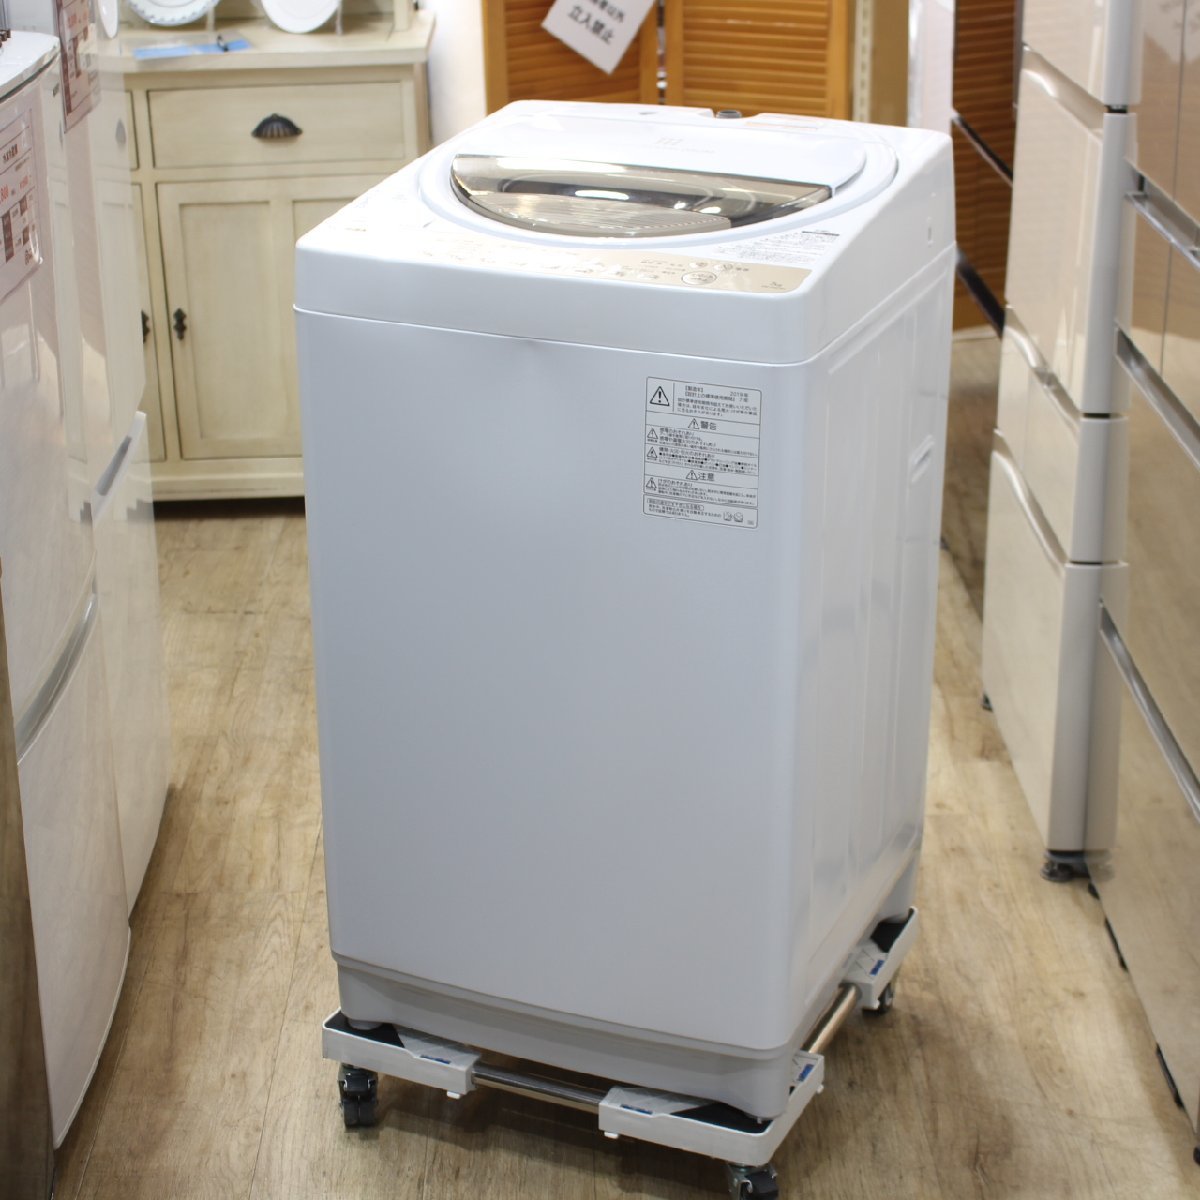 東京都中野区にて 東芝 全自動洗濯機 AW-7G8 2019年製 を出張買取させて頂きました。